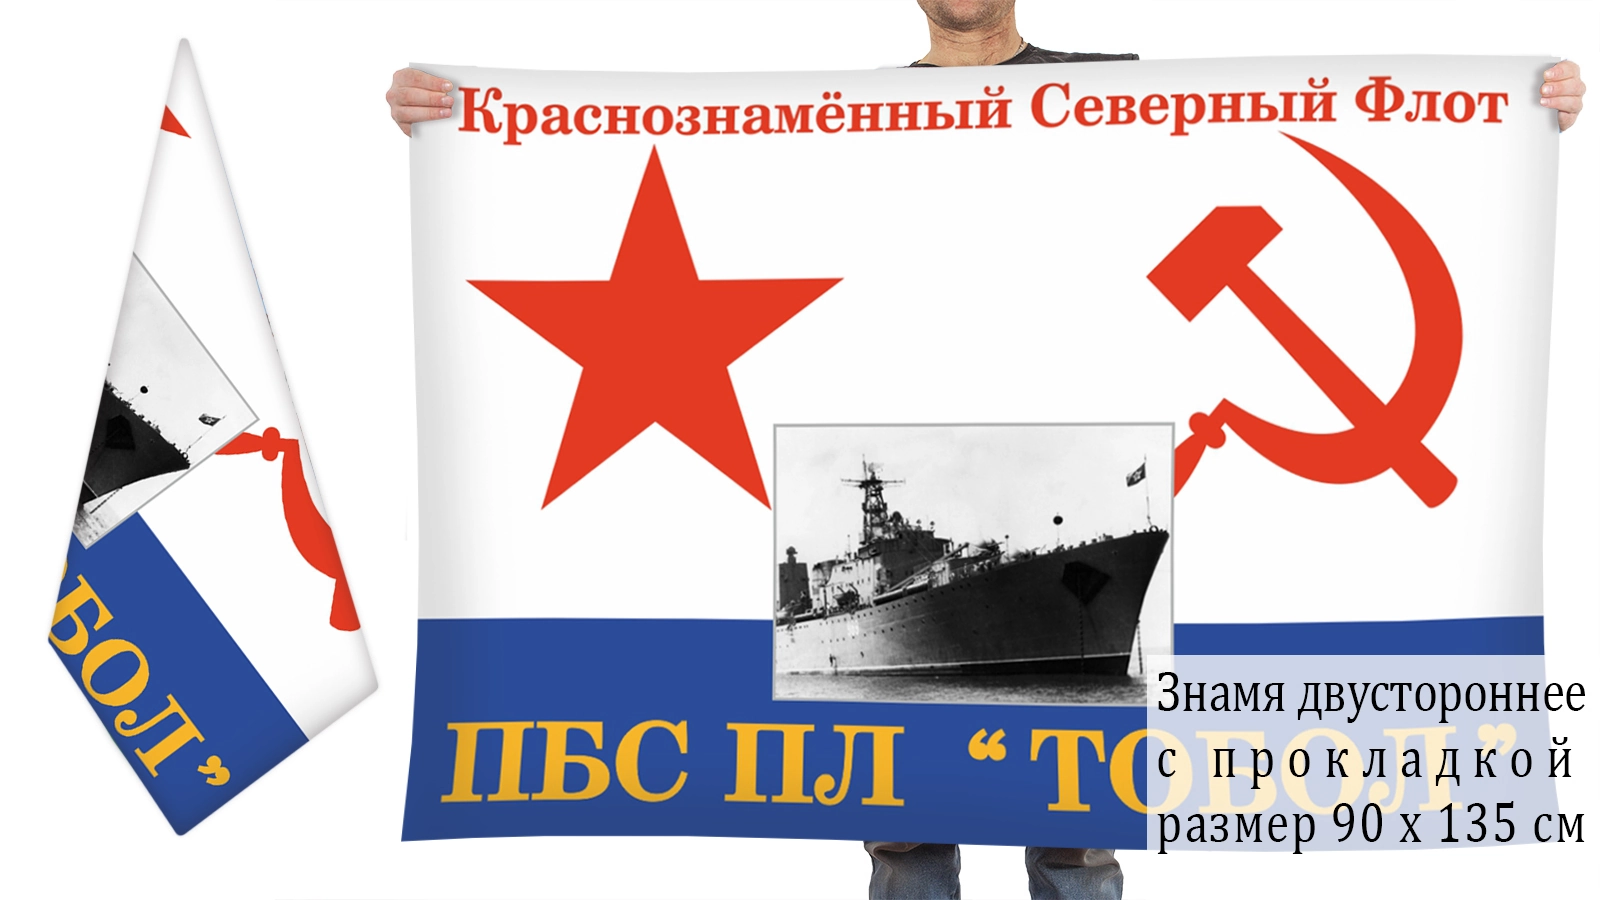 Двусторонний флаг ПБС ПЛ "Тобол"